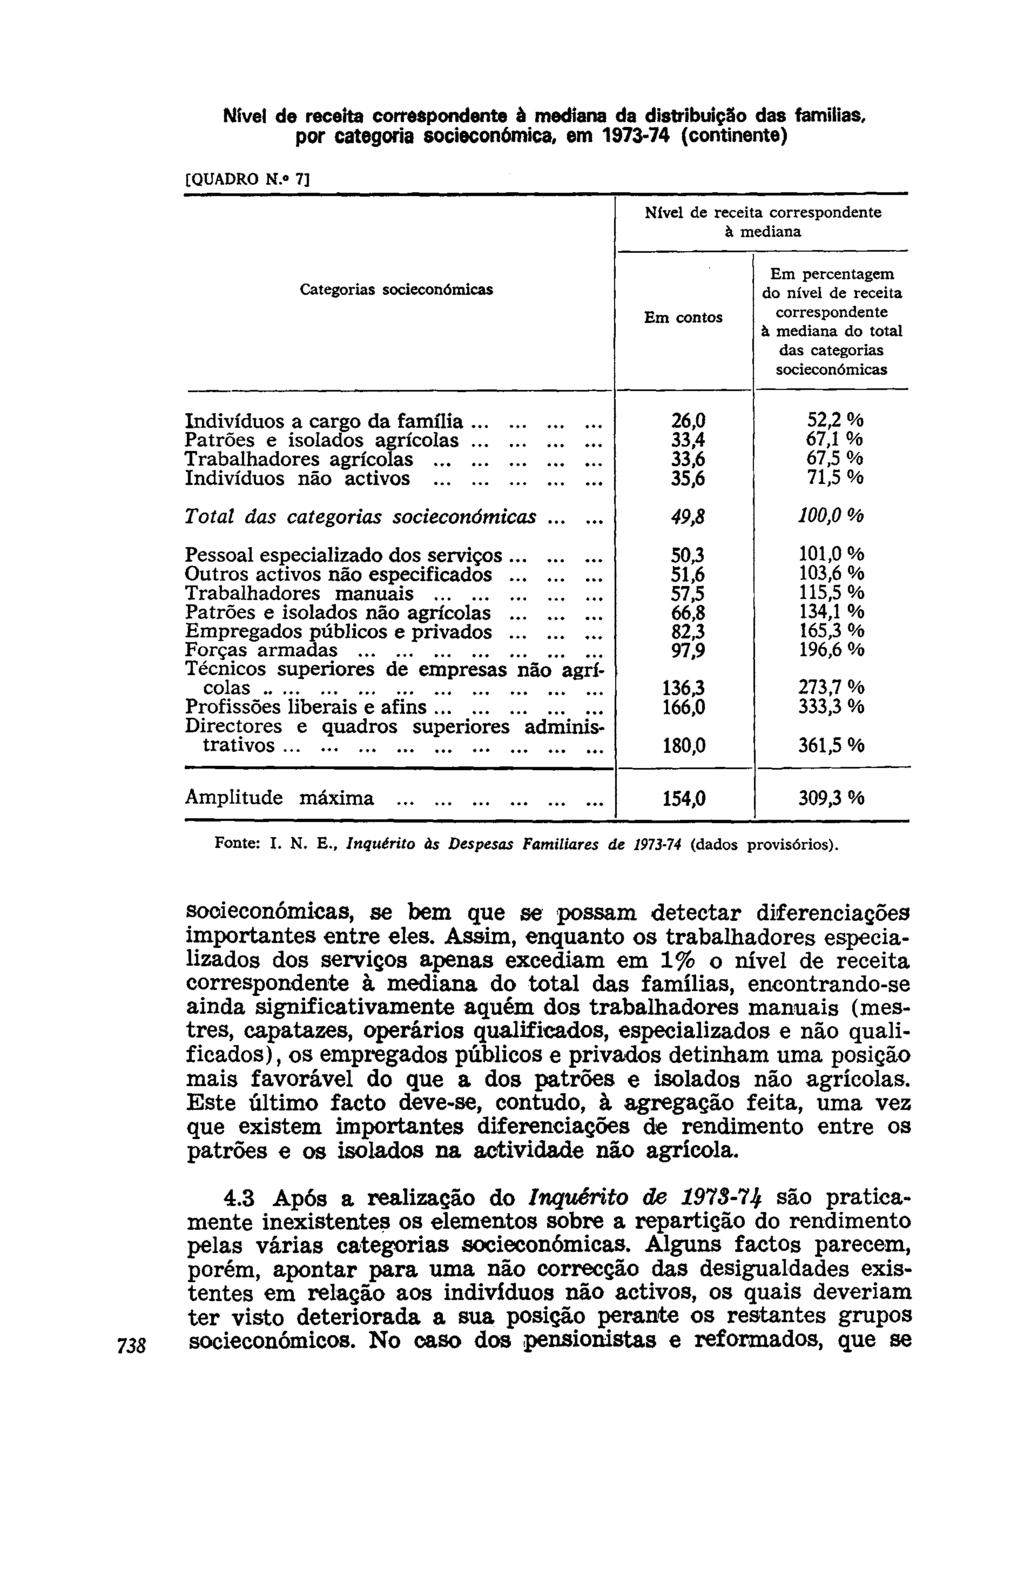 à mediana da distribuição das famílias, por categoria socieconómica, em 1973-74 (continente) [QUADRO N.